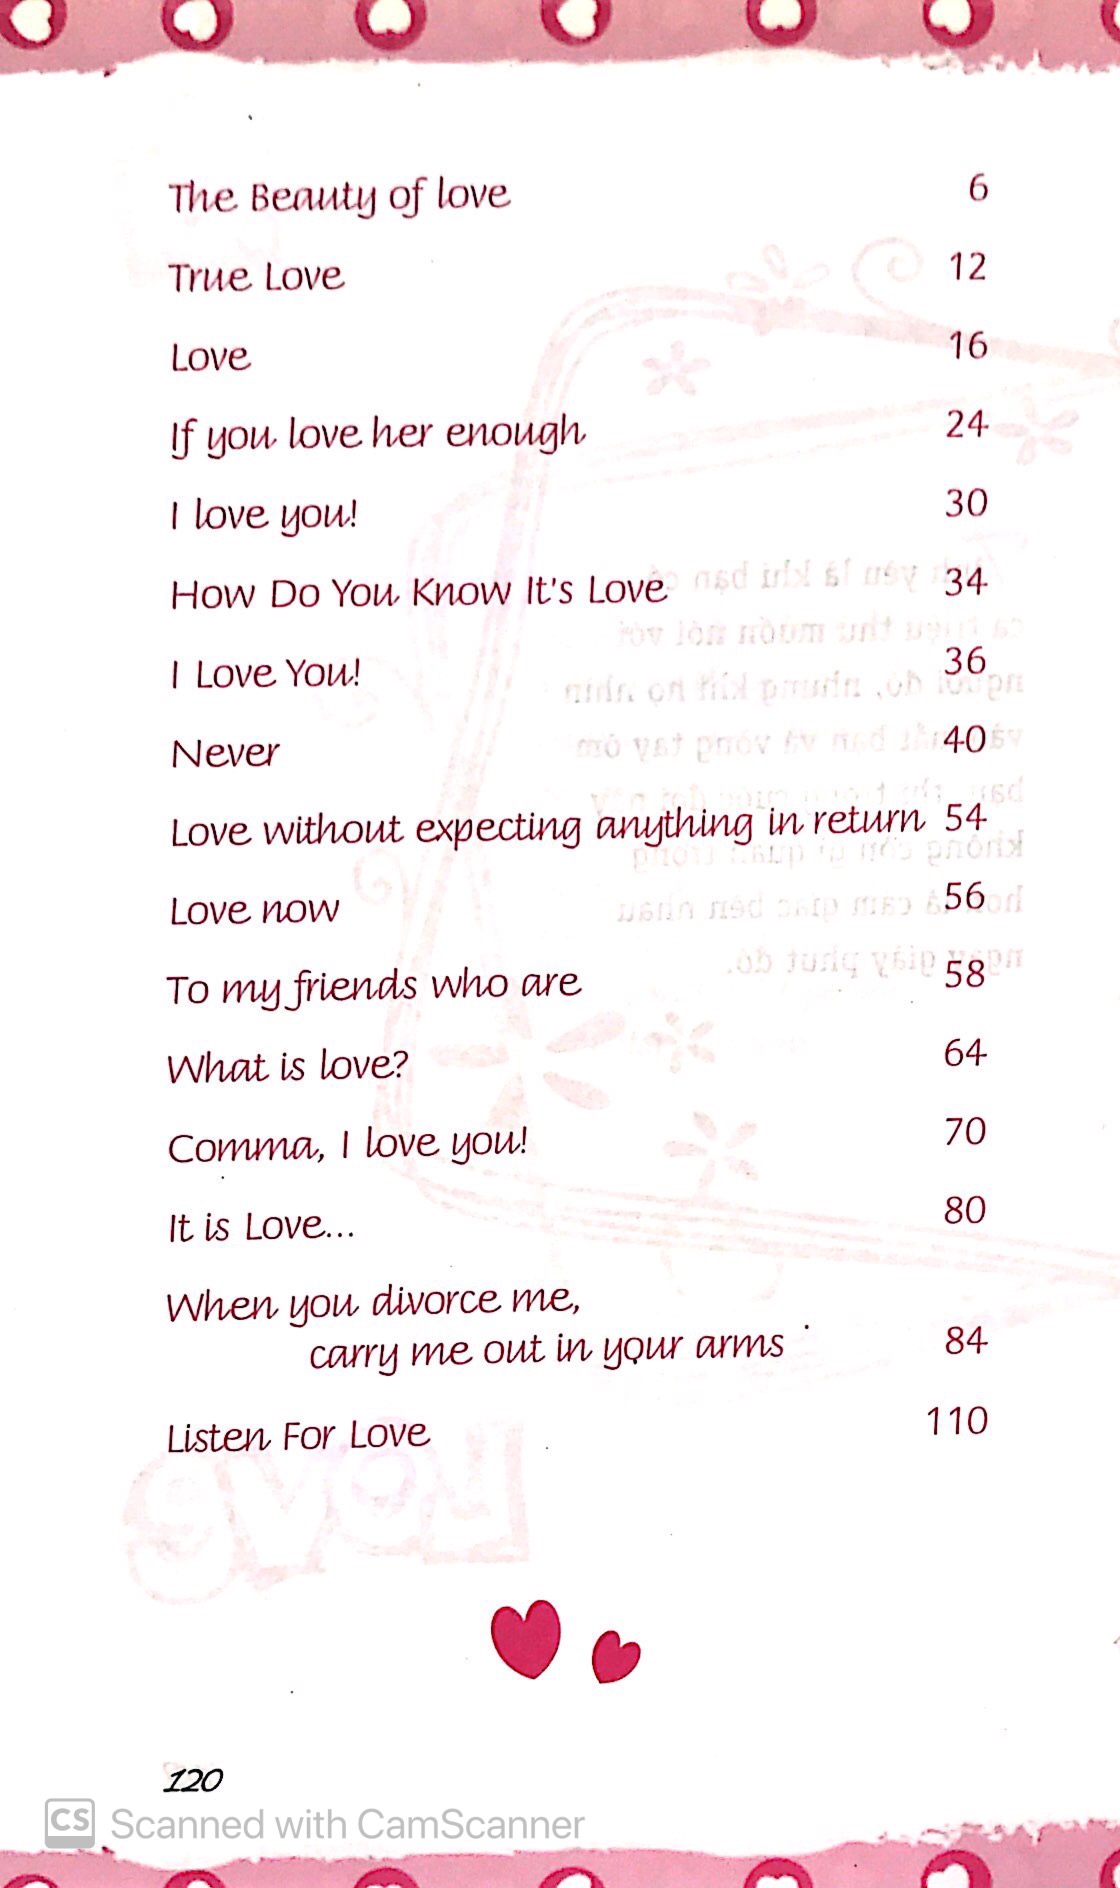 Thông Điệp Yêu Thương - Honey, I Love You PDF